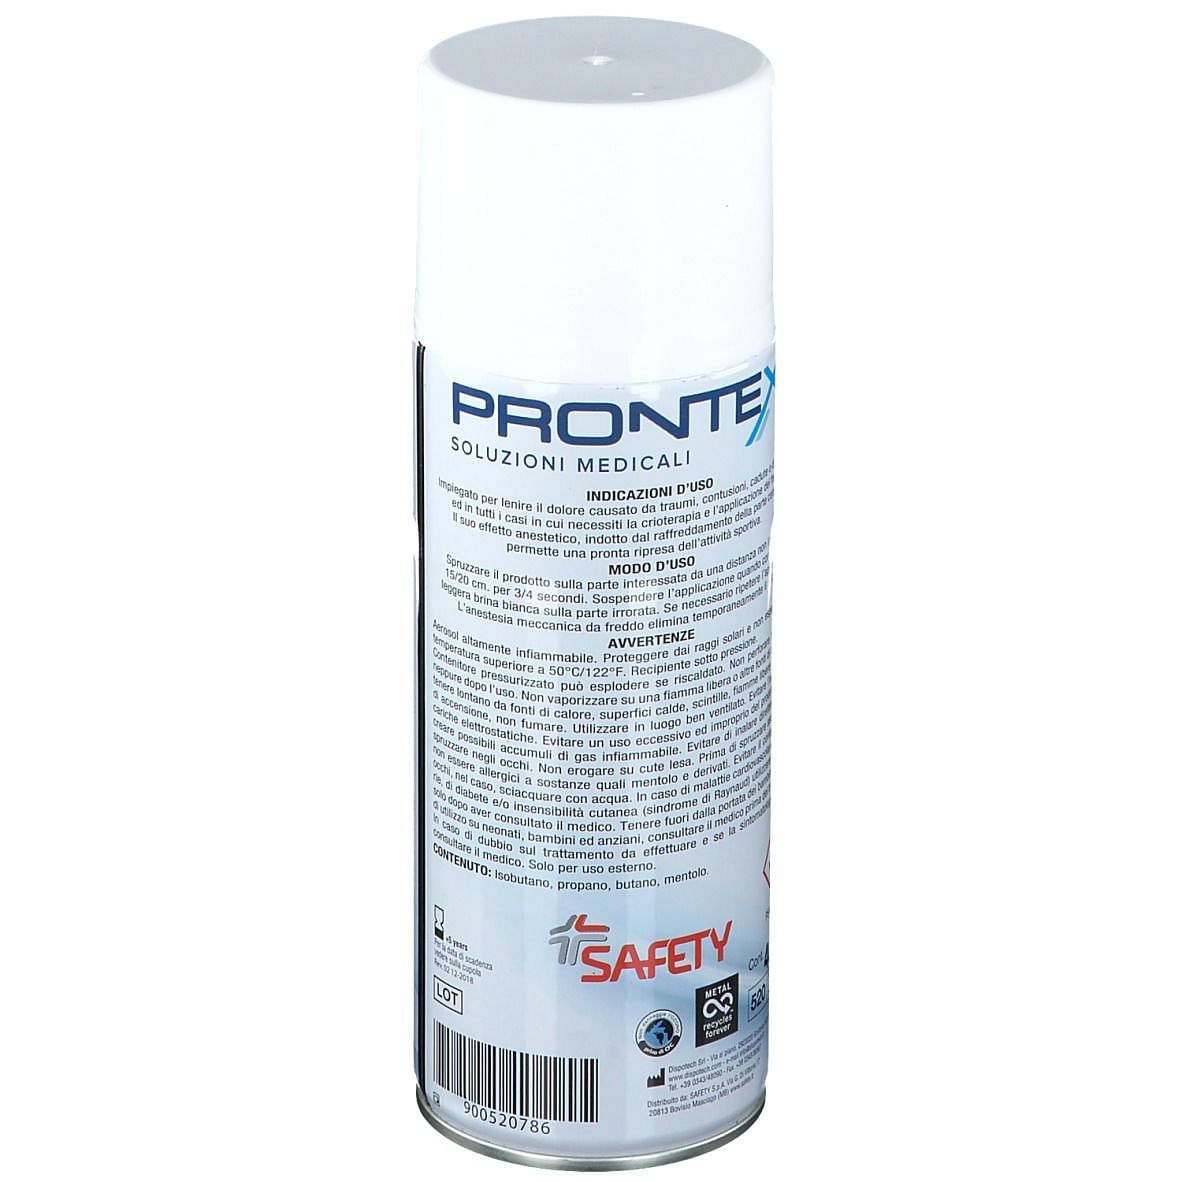 Prontex Ghiaccio Spray 400 Ml: Utilizzo, effetti collaterali e